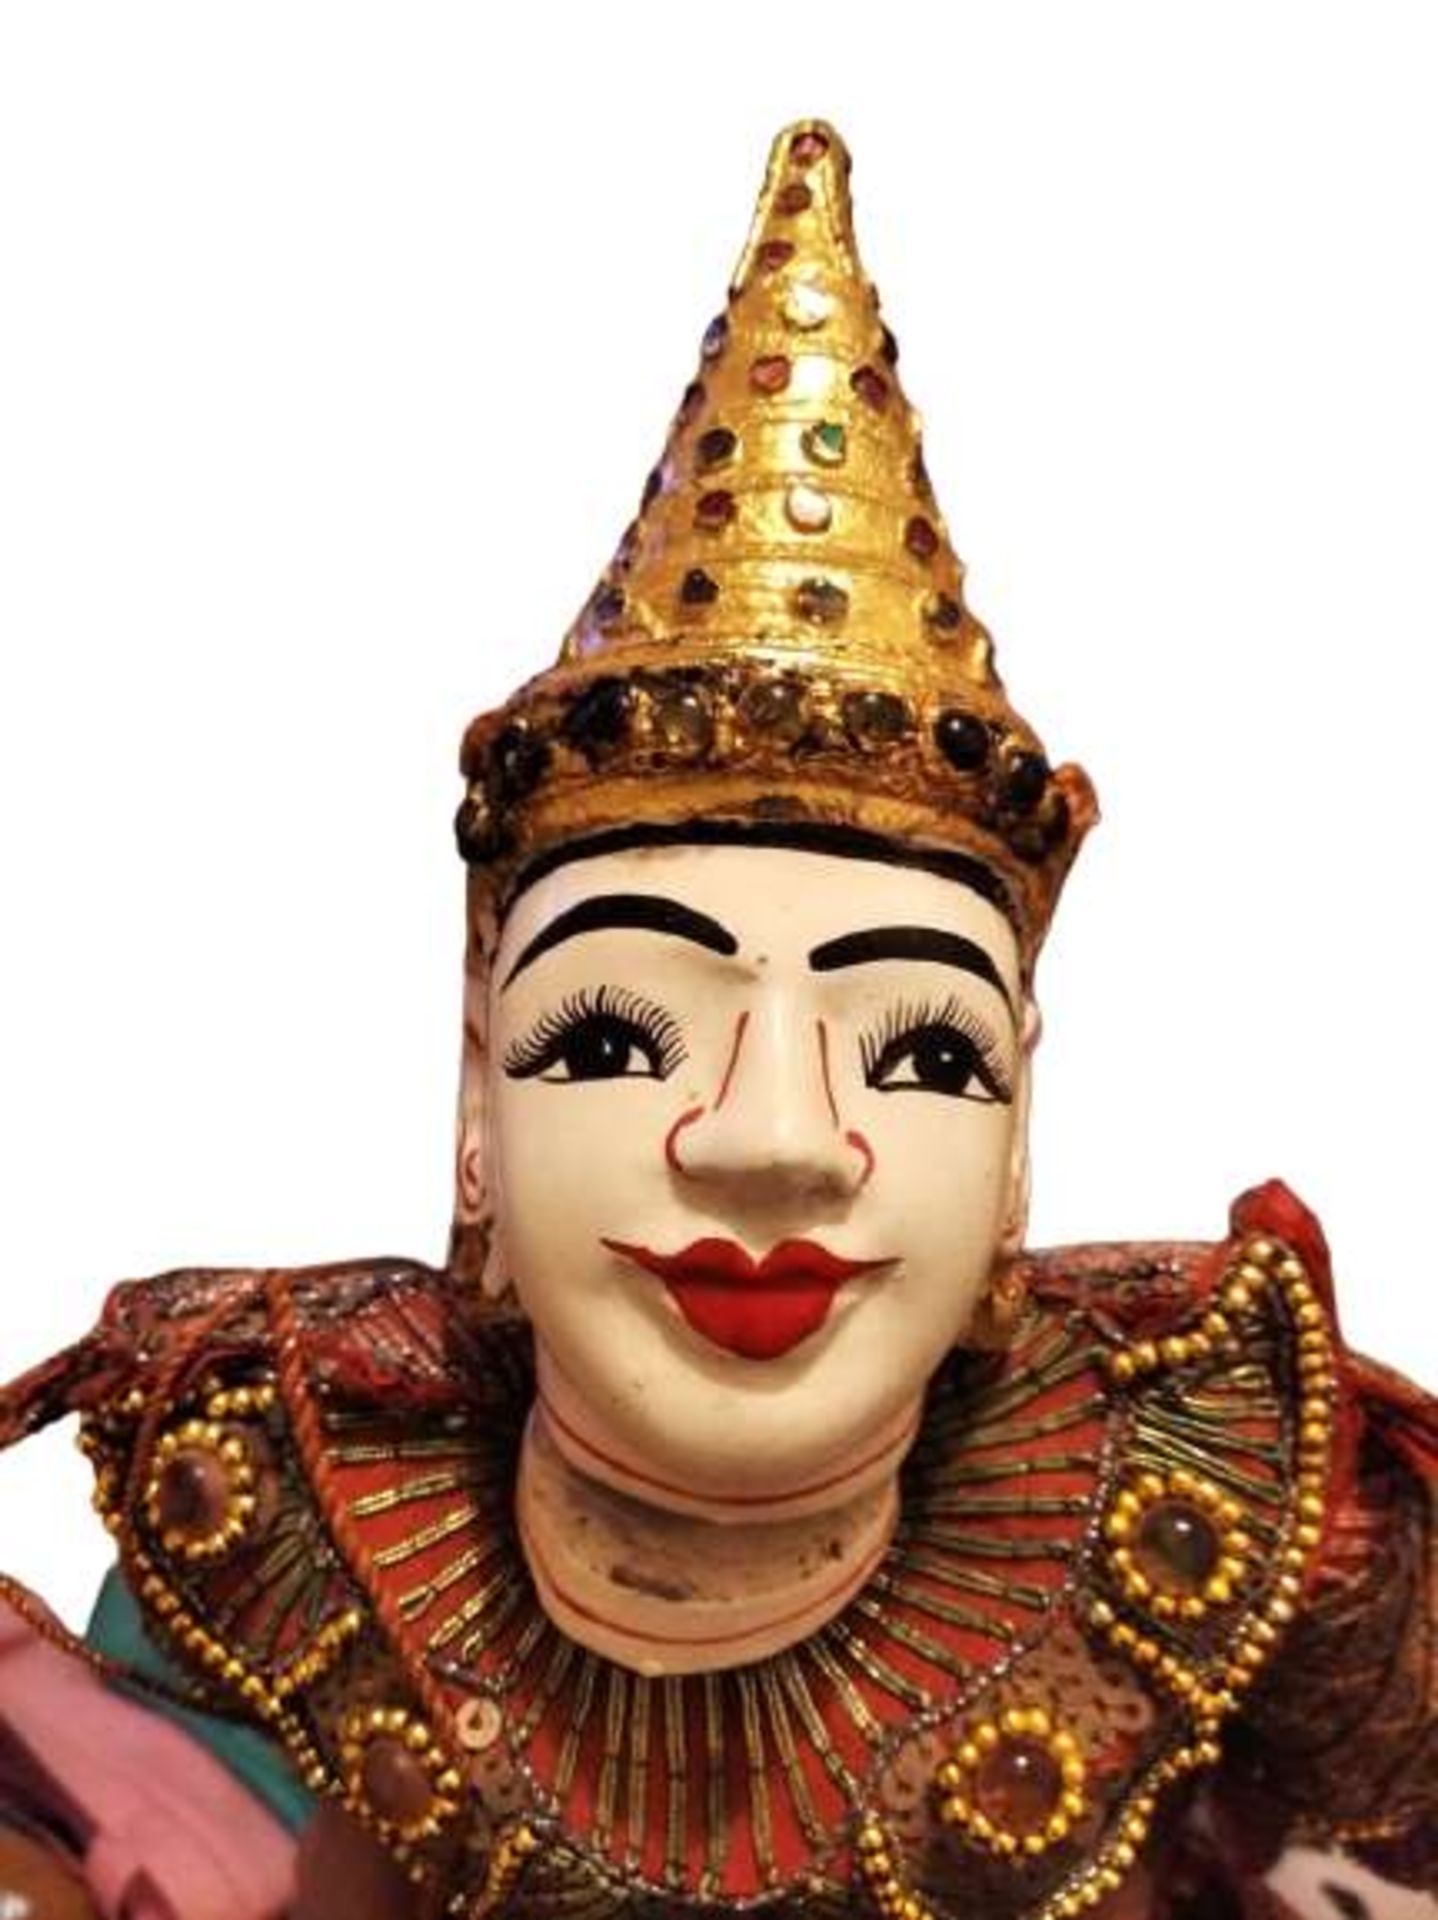 Burmanische Marionette | Yoke thé - Image 2 of 4